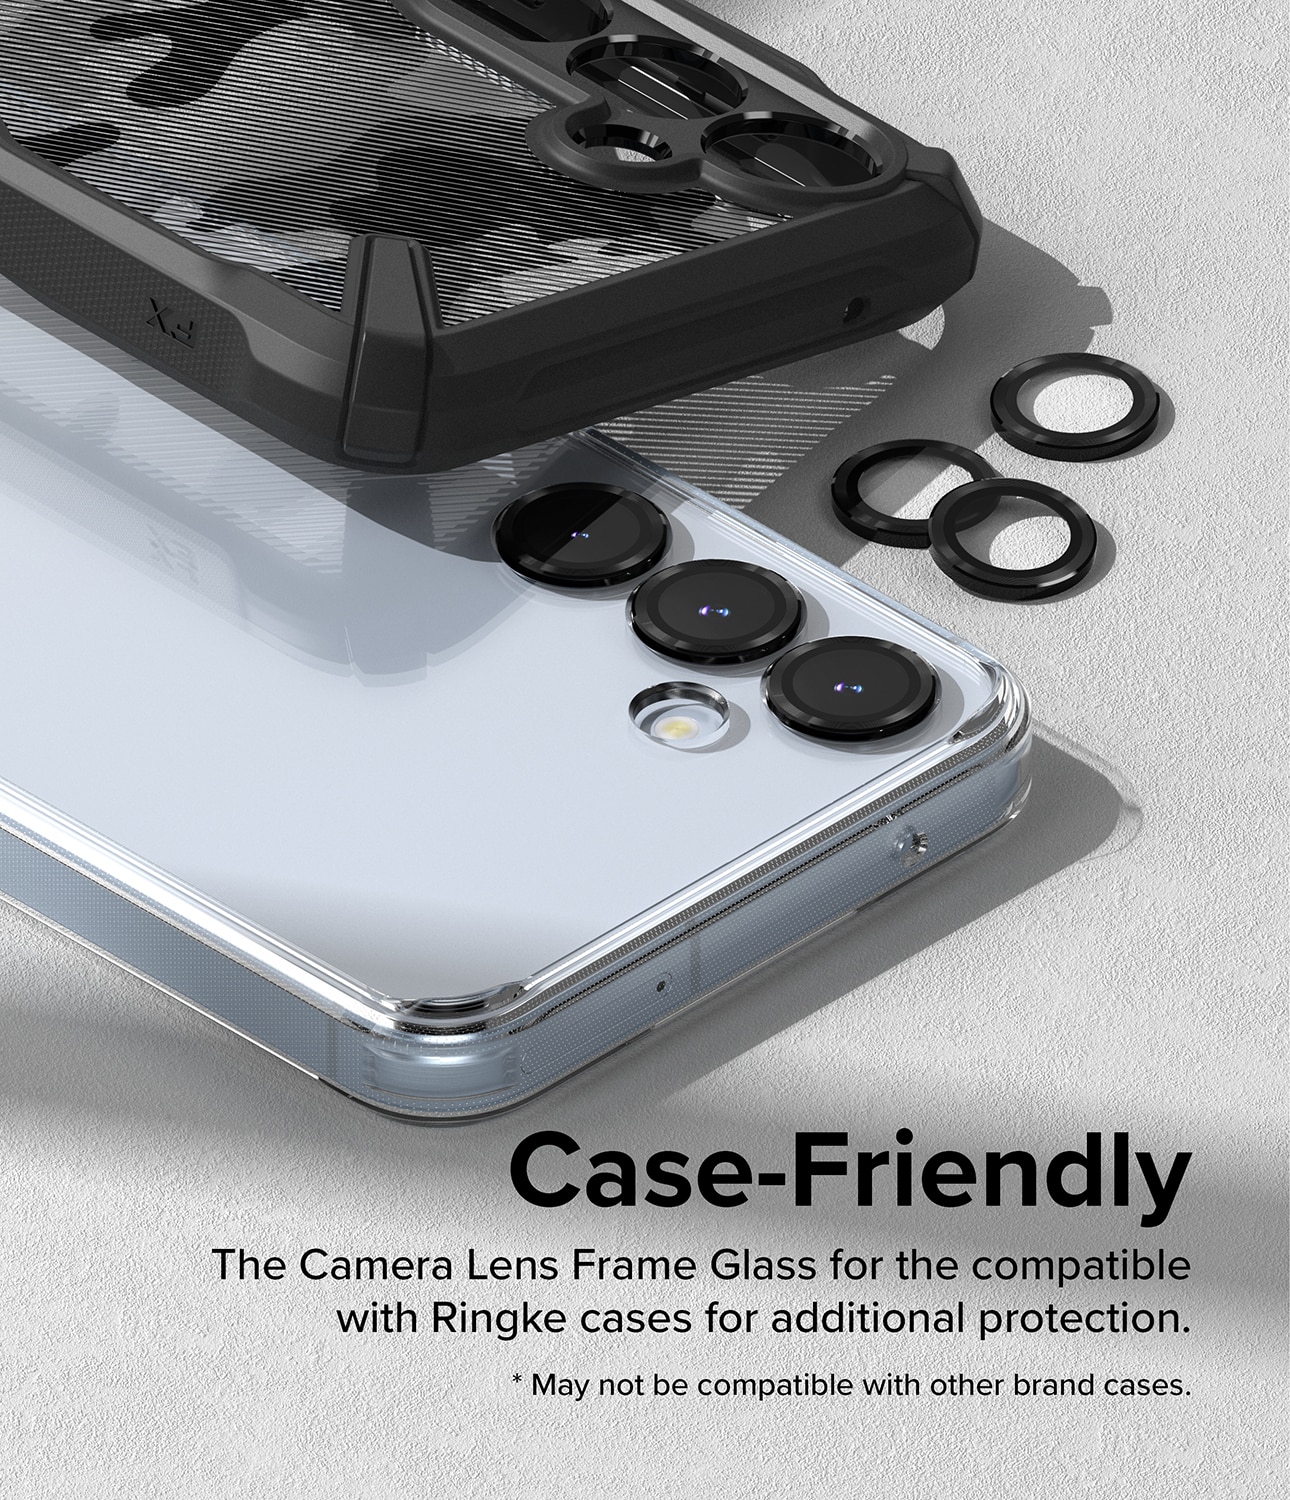 Samsung Galaxy A35 Camera Lens Frame Glass Black